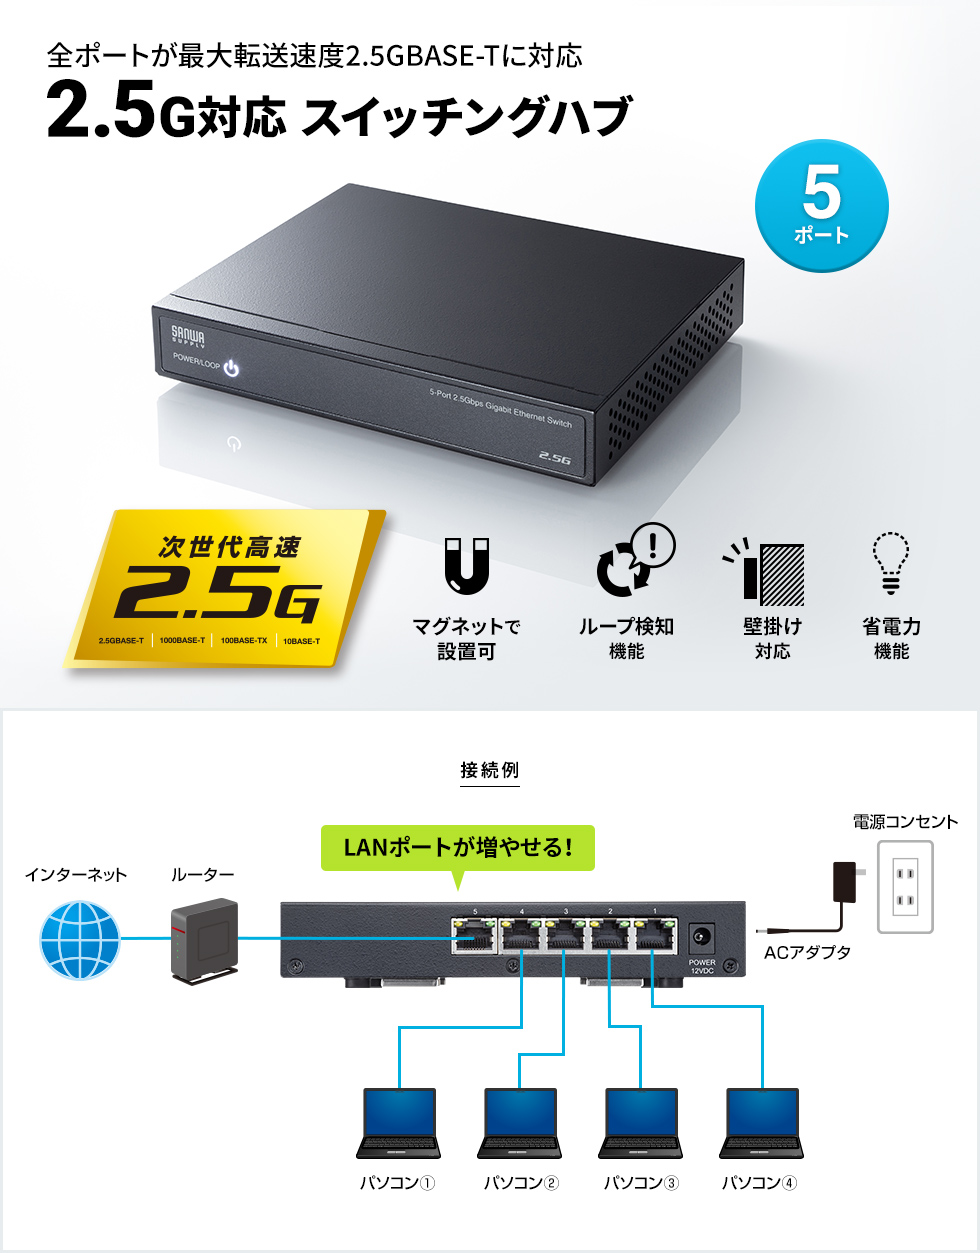 LAN-2GIGAS501【2.5G対応 スイッチングハブ（5ポート・マグネット付き）】全ポート2.5GBASE-Tに対応 しマグネット付きでスチールデスクなどにも固定できる2.5GBASE-T対応スイッチングハブ。｜サンワサプライ株式会社